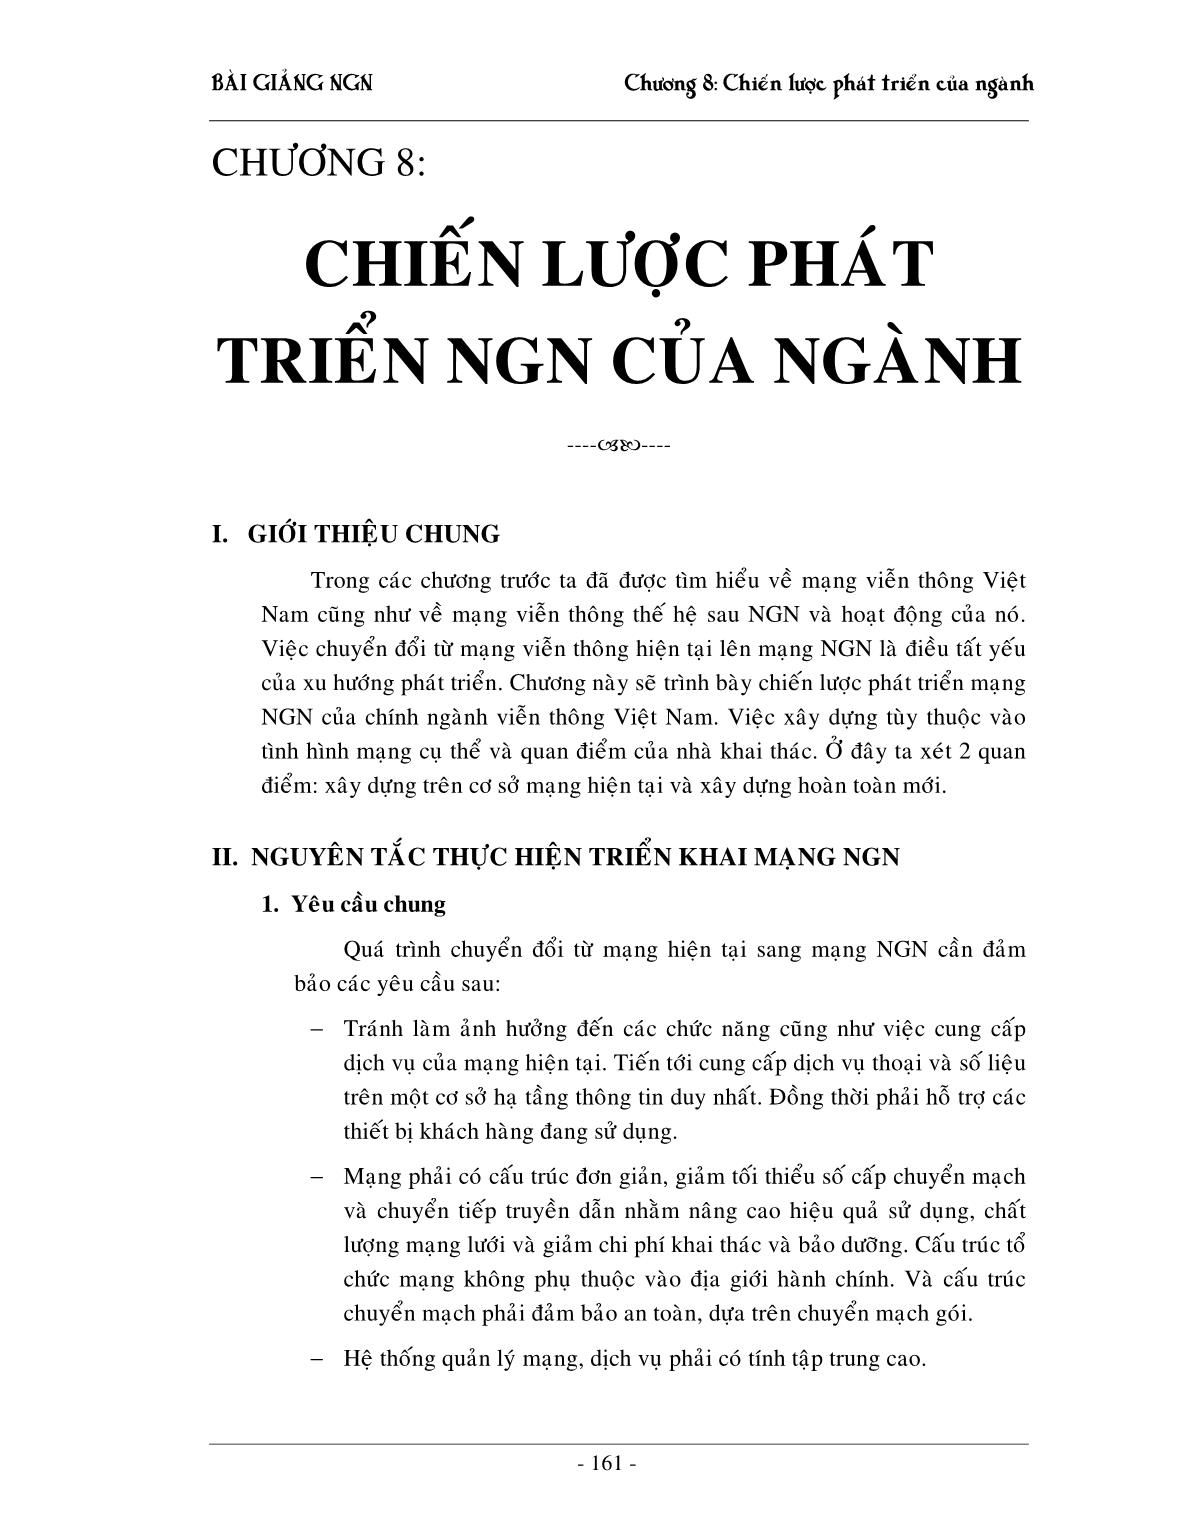 Bài giảng NGN - Chương 8: Chiến lược phát triển NGN của ngành trang 1